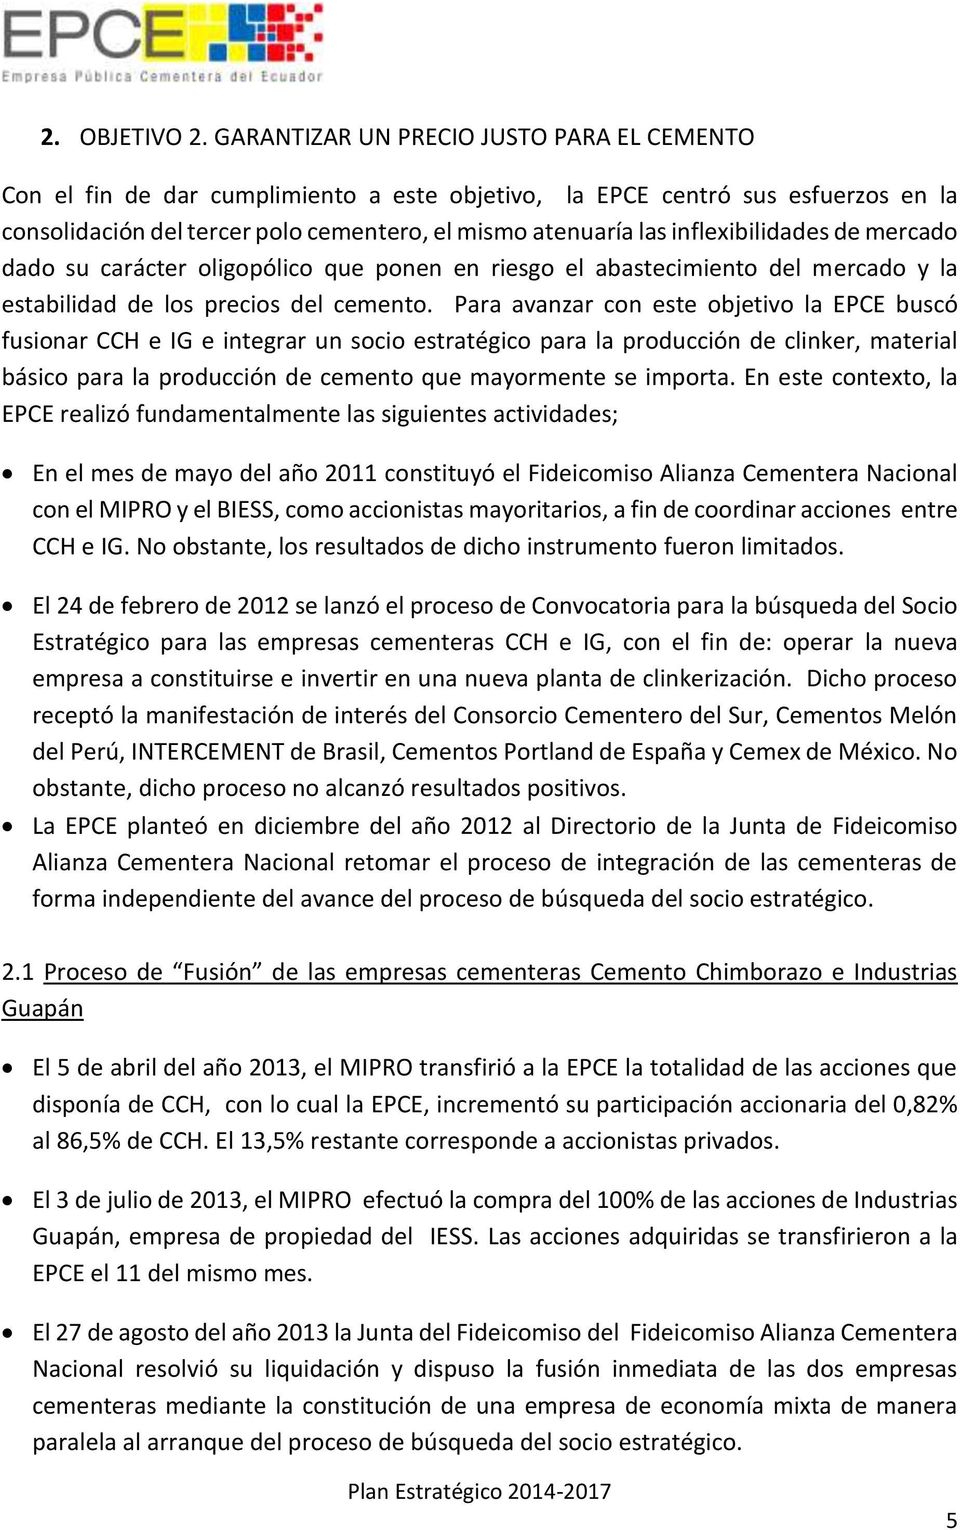 Plan Estrategico Empresa Publica Cementera Del Ecuador Proceso Y